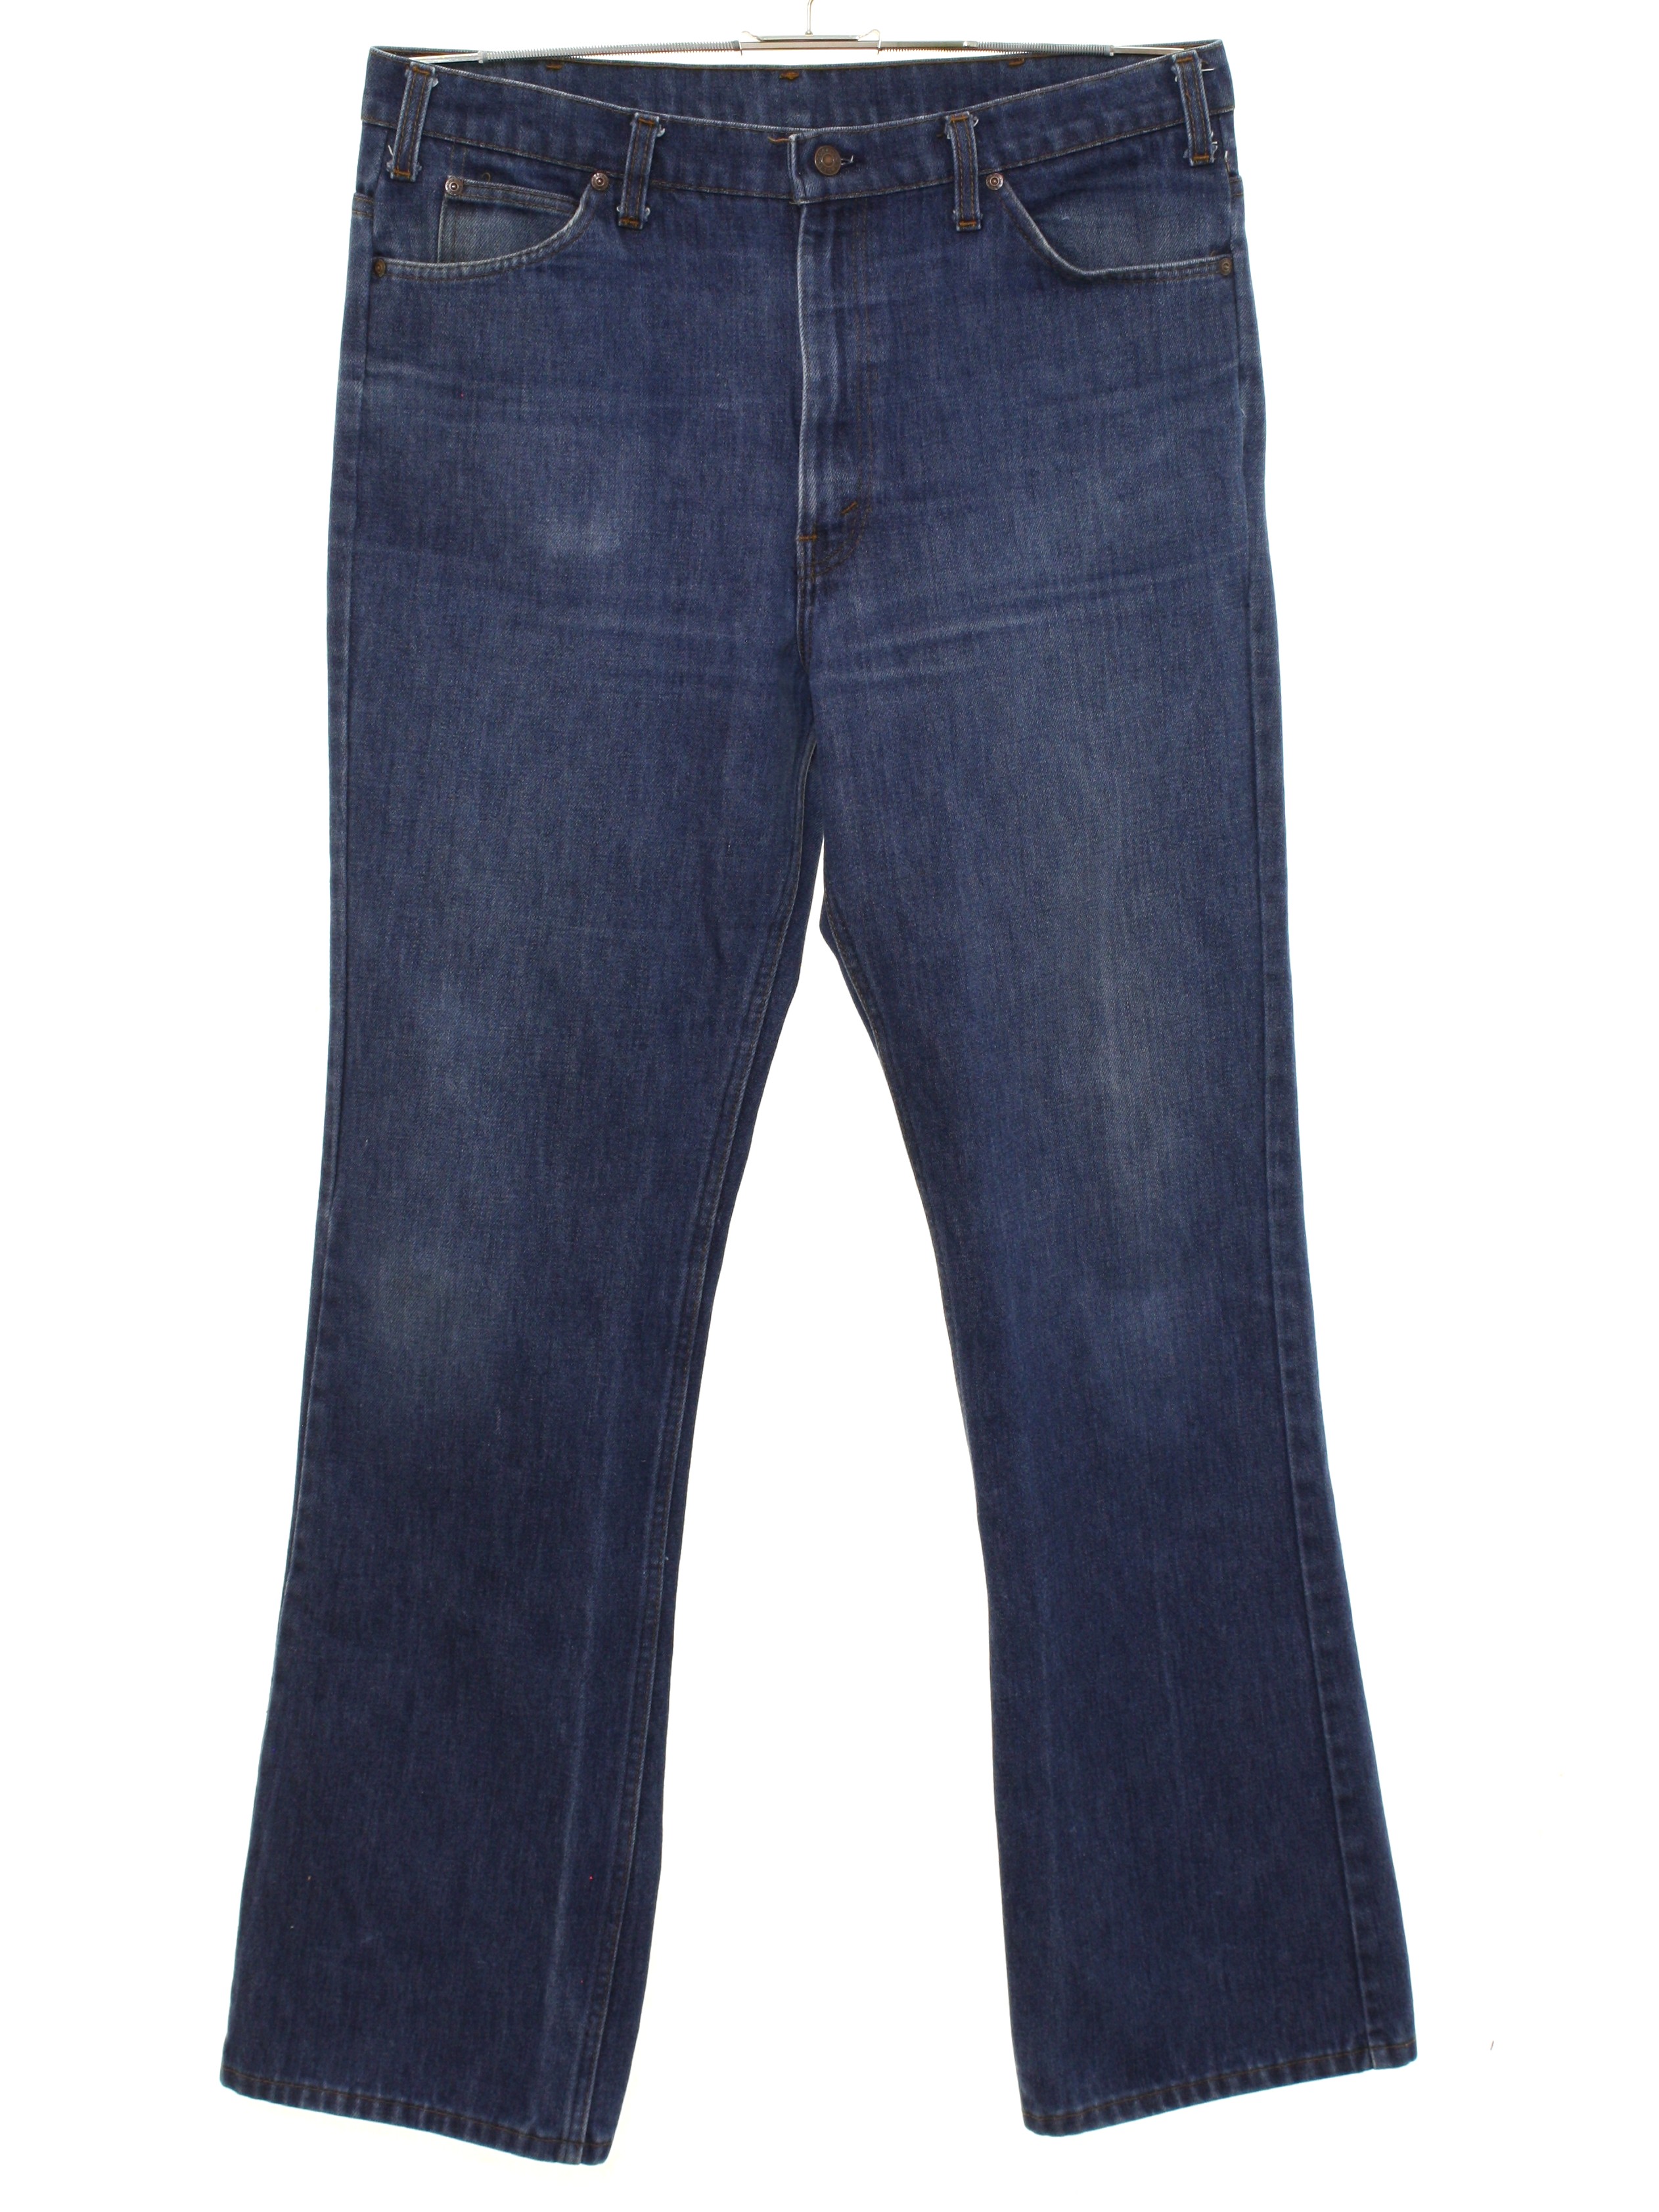 Vintage 70s Flared Pants / Flares: 70s -Plain Pockets- Mens slightly ...